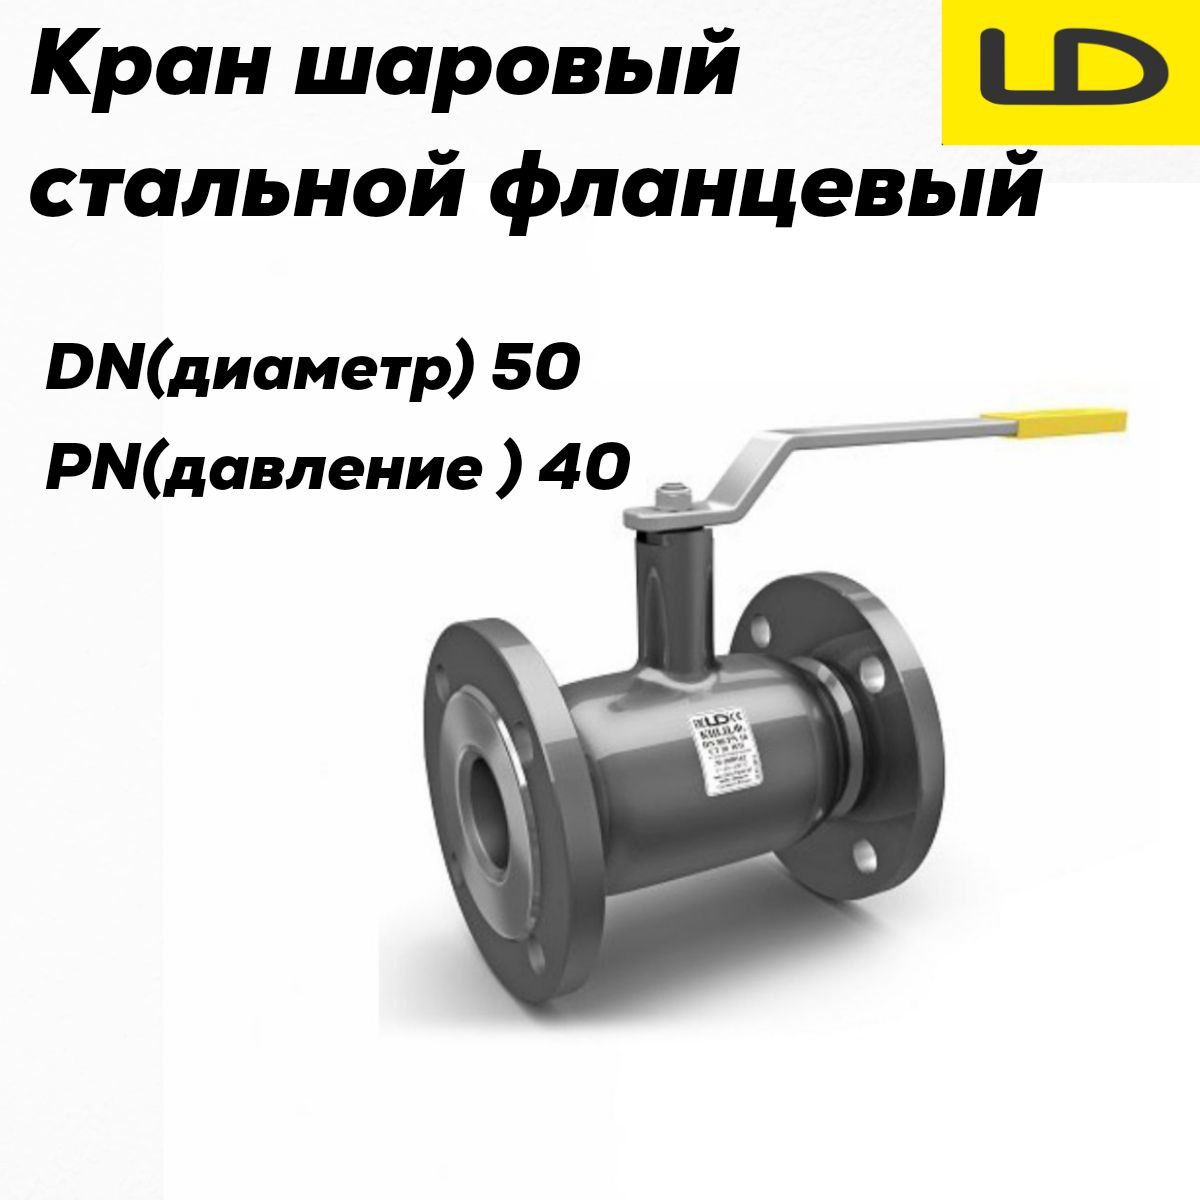 Кран шаровой стальной фланцевый КШЦФ DN 50 PN40 стандарт